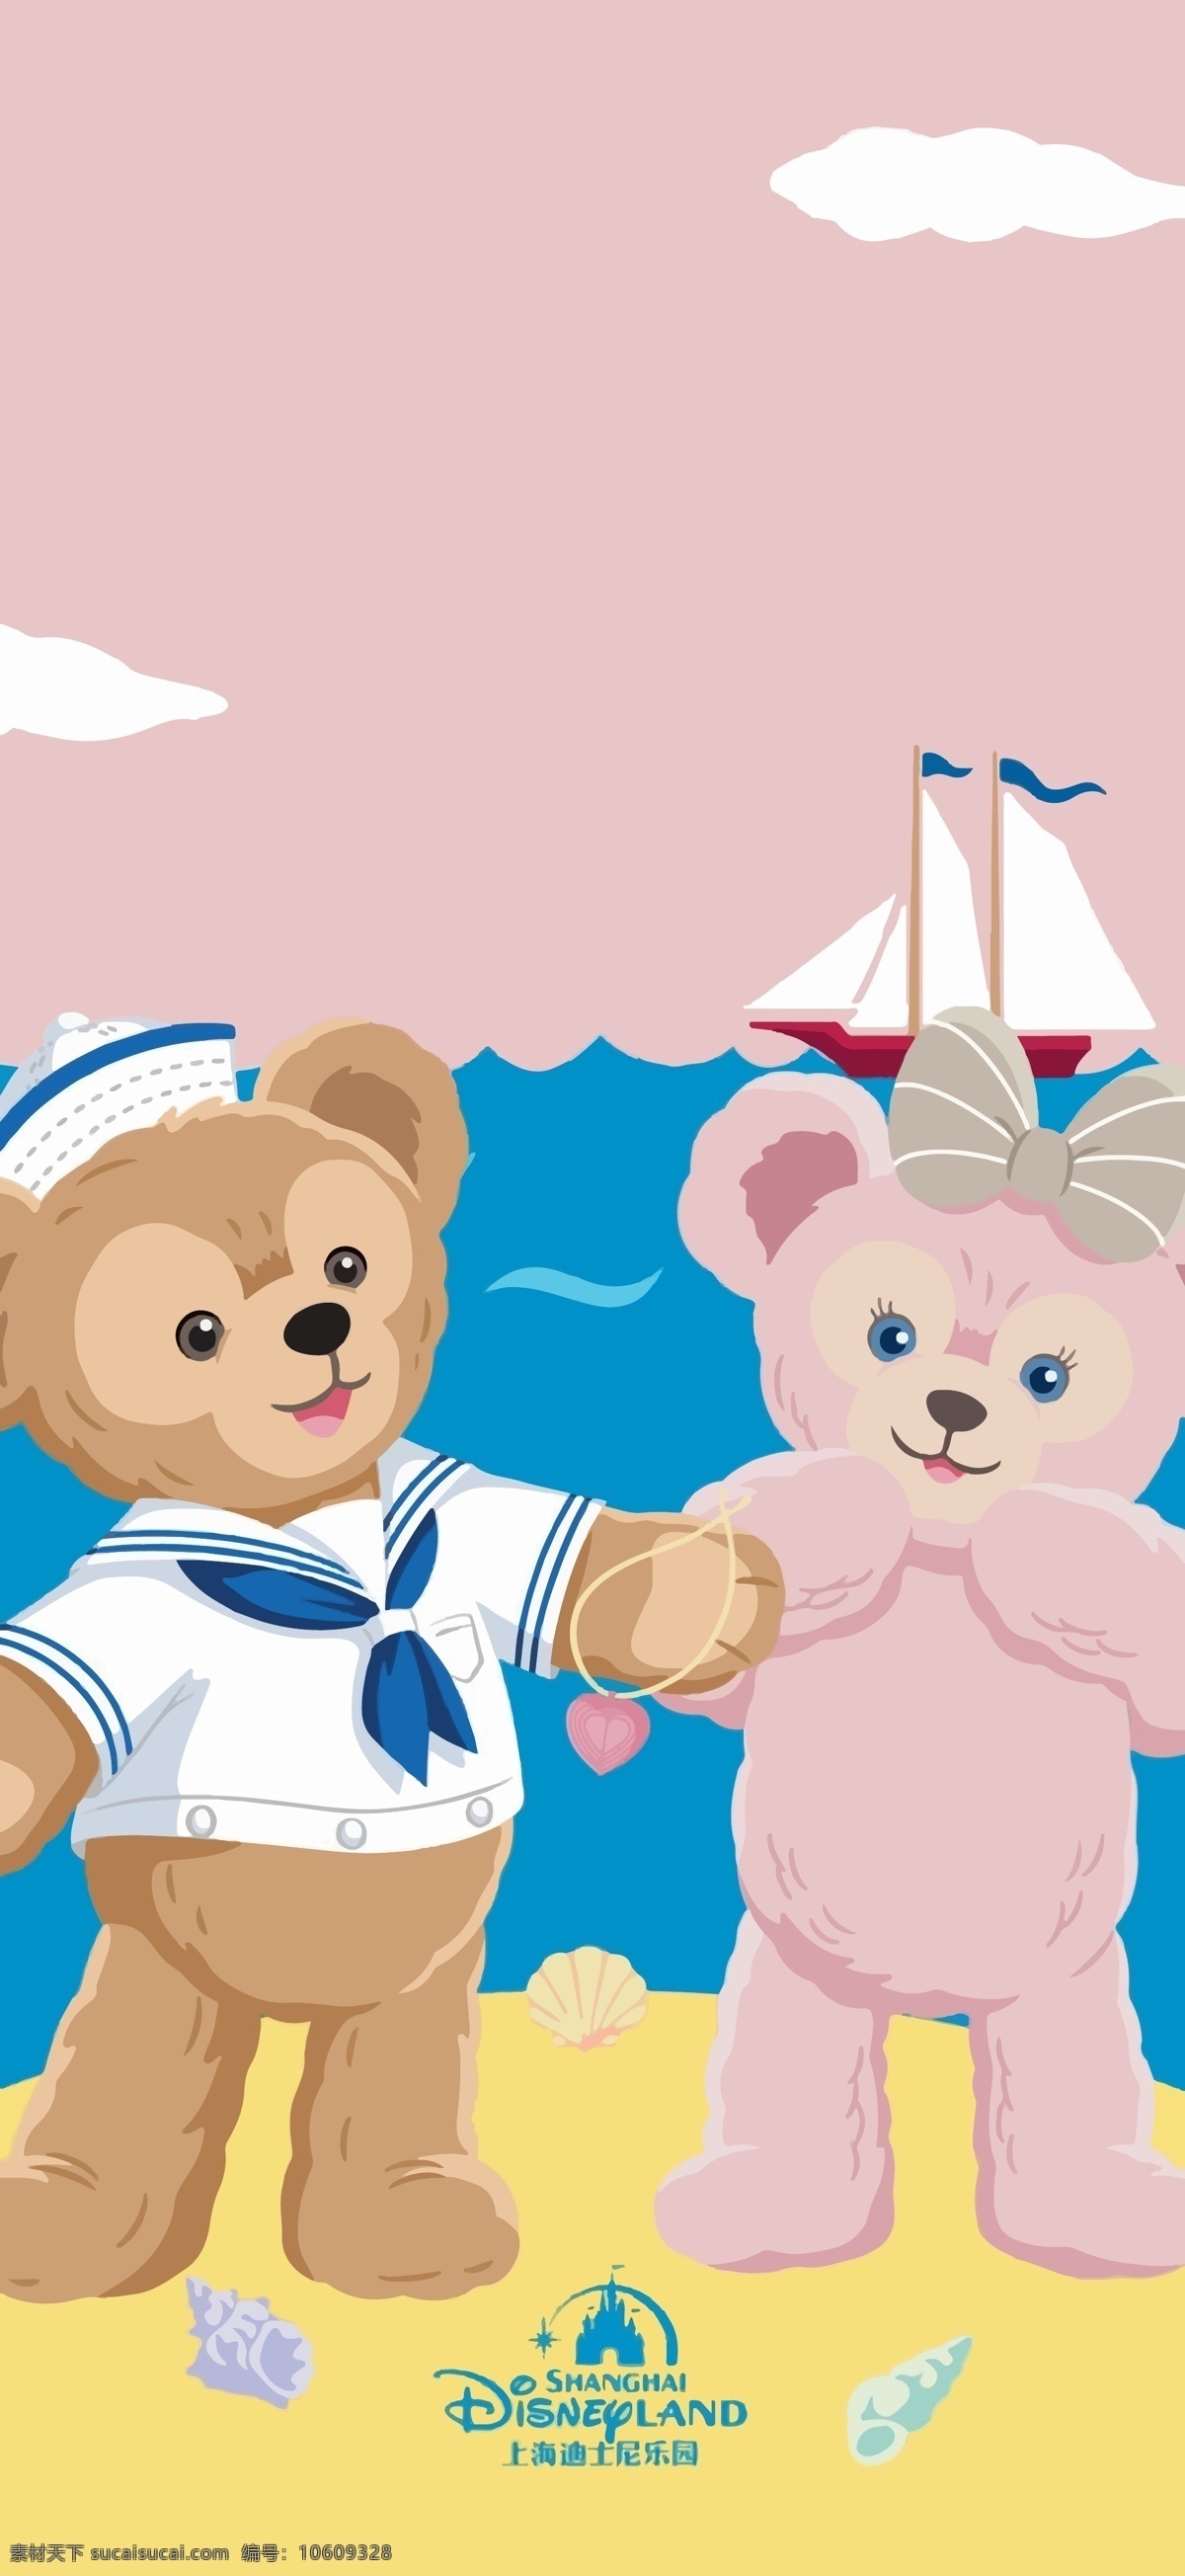 达菲 雪莉 玫 海军 装 素材图片 雪莉玫 迪士尼 海军装 海边 动漫动画 动漫人物